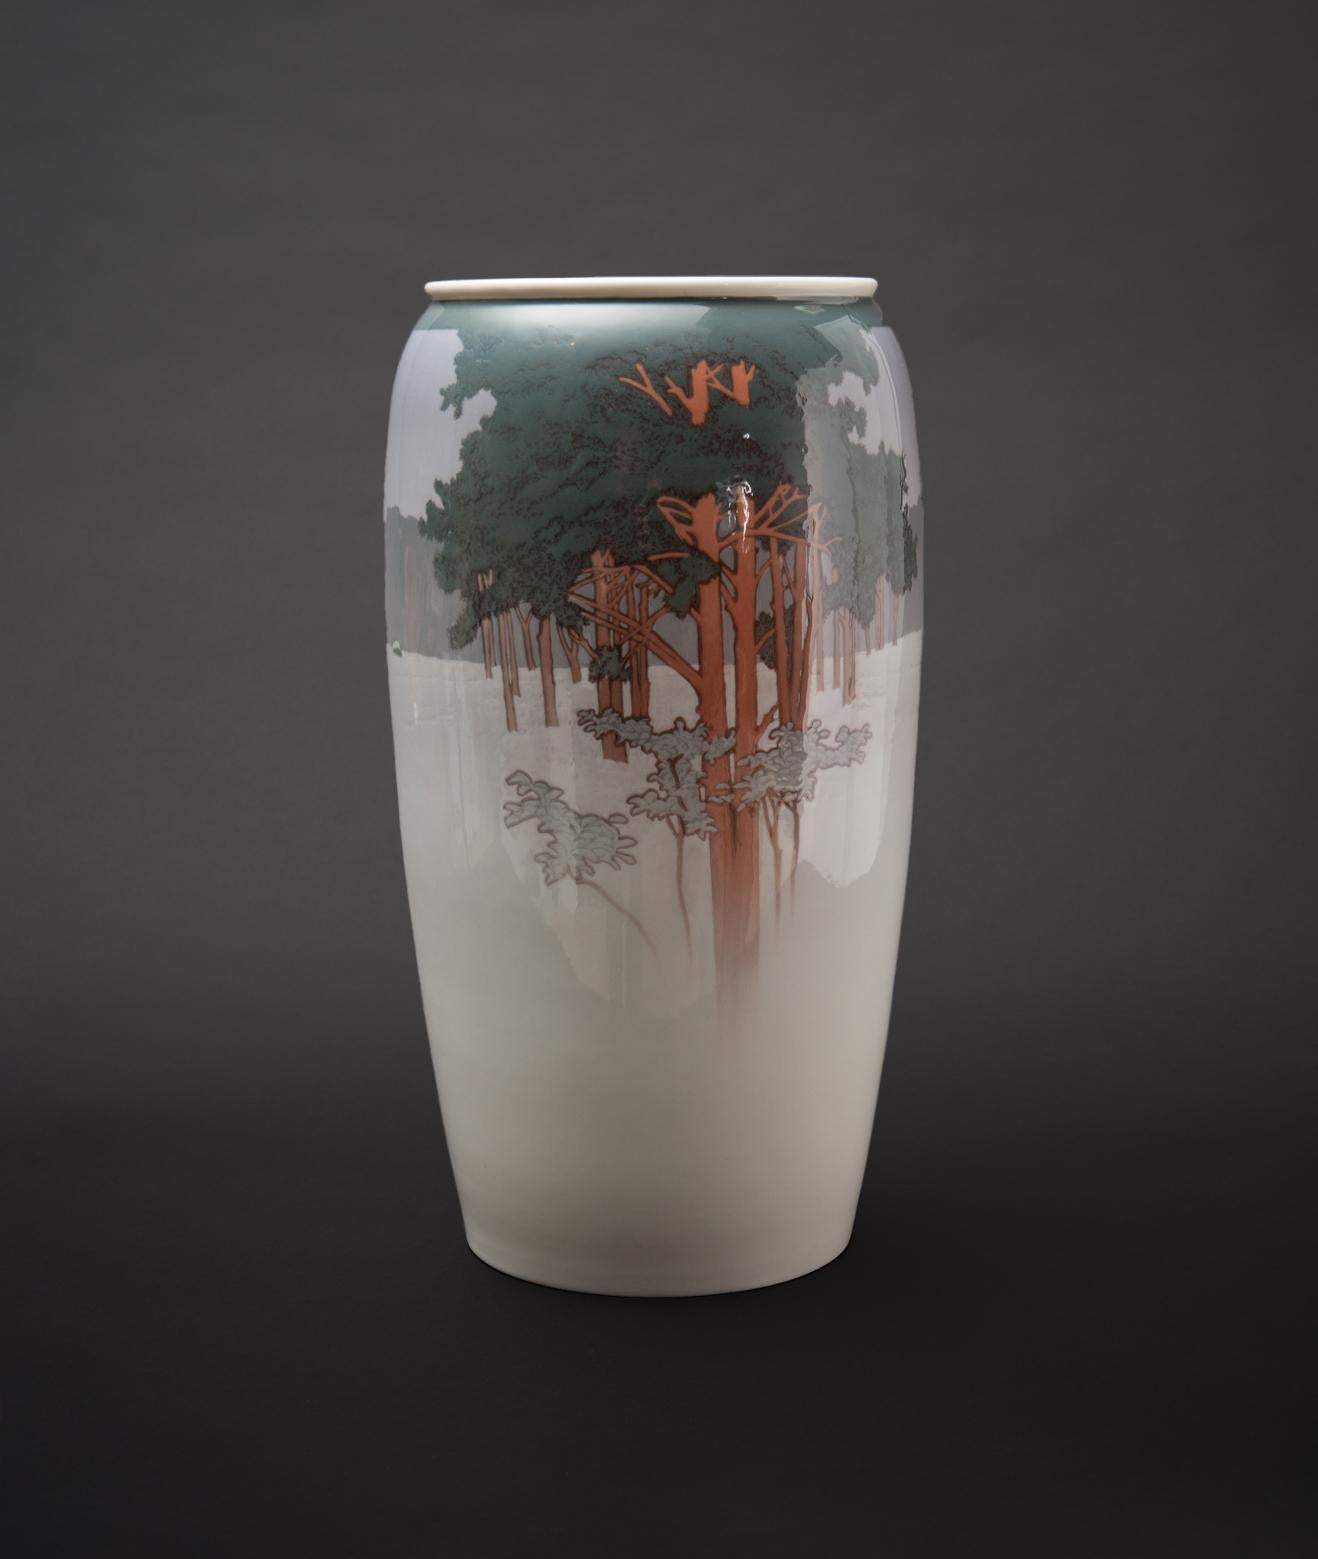 Theodor Hermann Schmuz-Baudiss pour Konigliche Porzellan-Manufaktur.

Ce vase monumental représente un paysage hivernal à l'orée d'une forêt. Un exemple stupéfiant du travail de cet artiste.